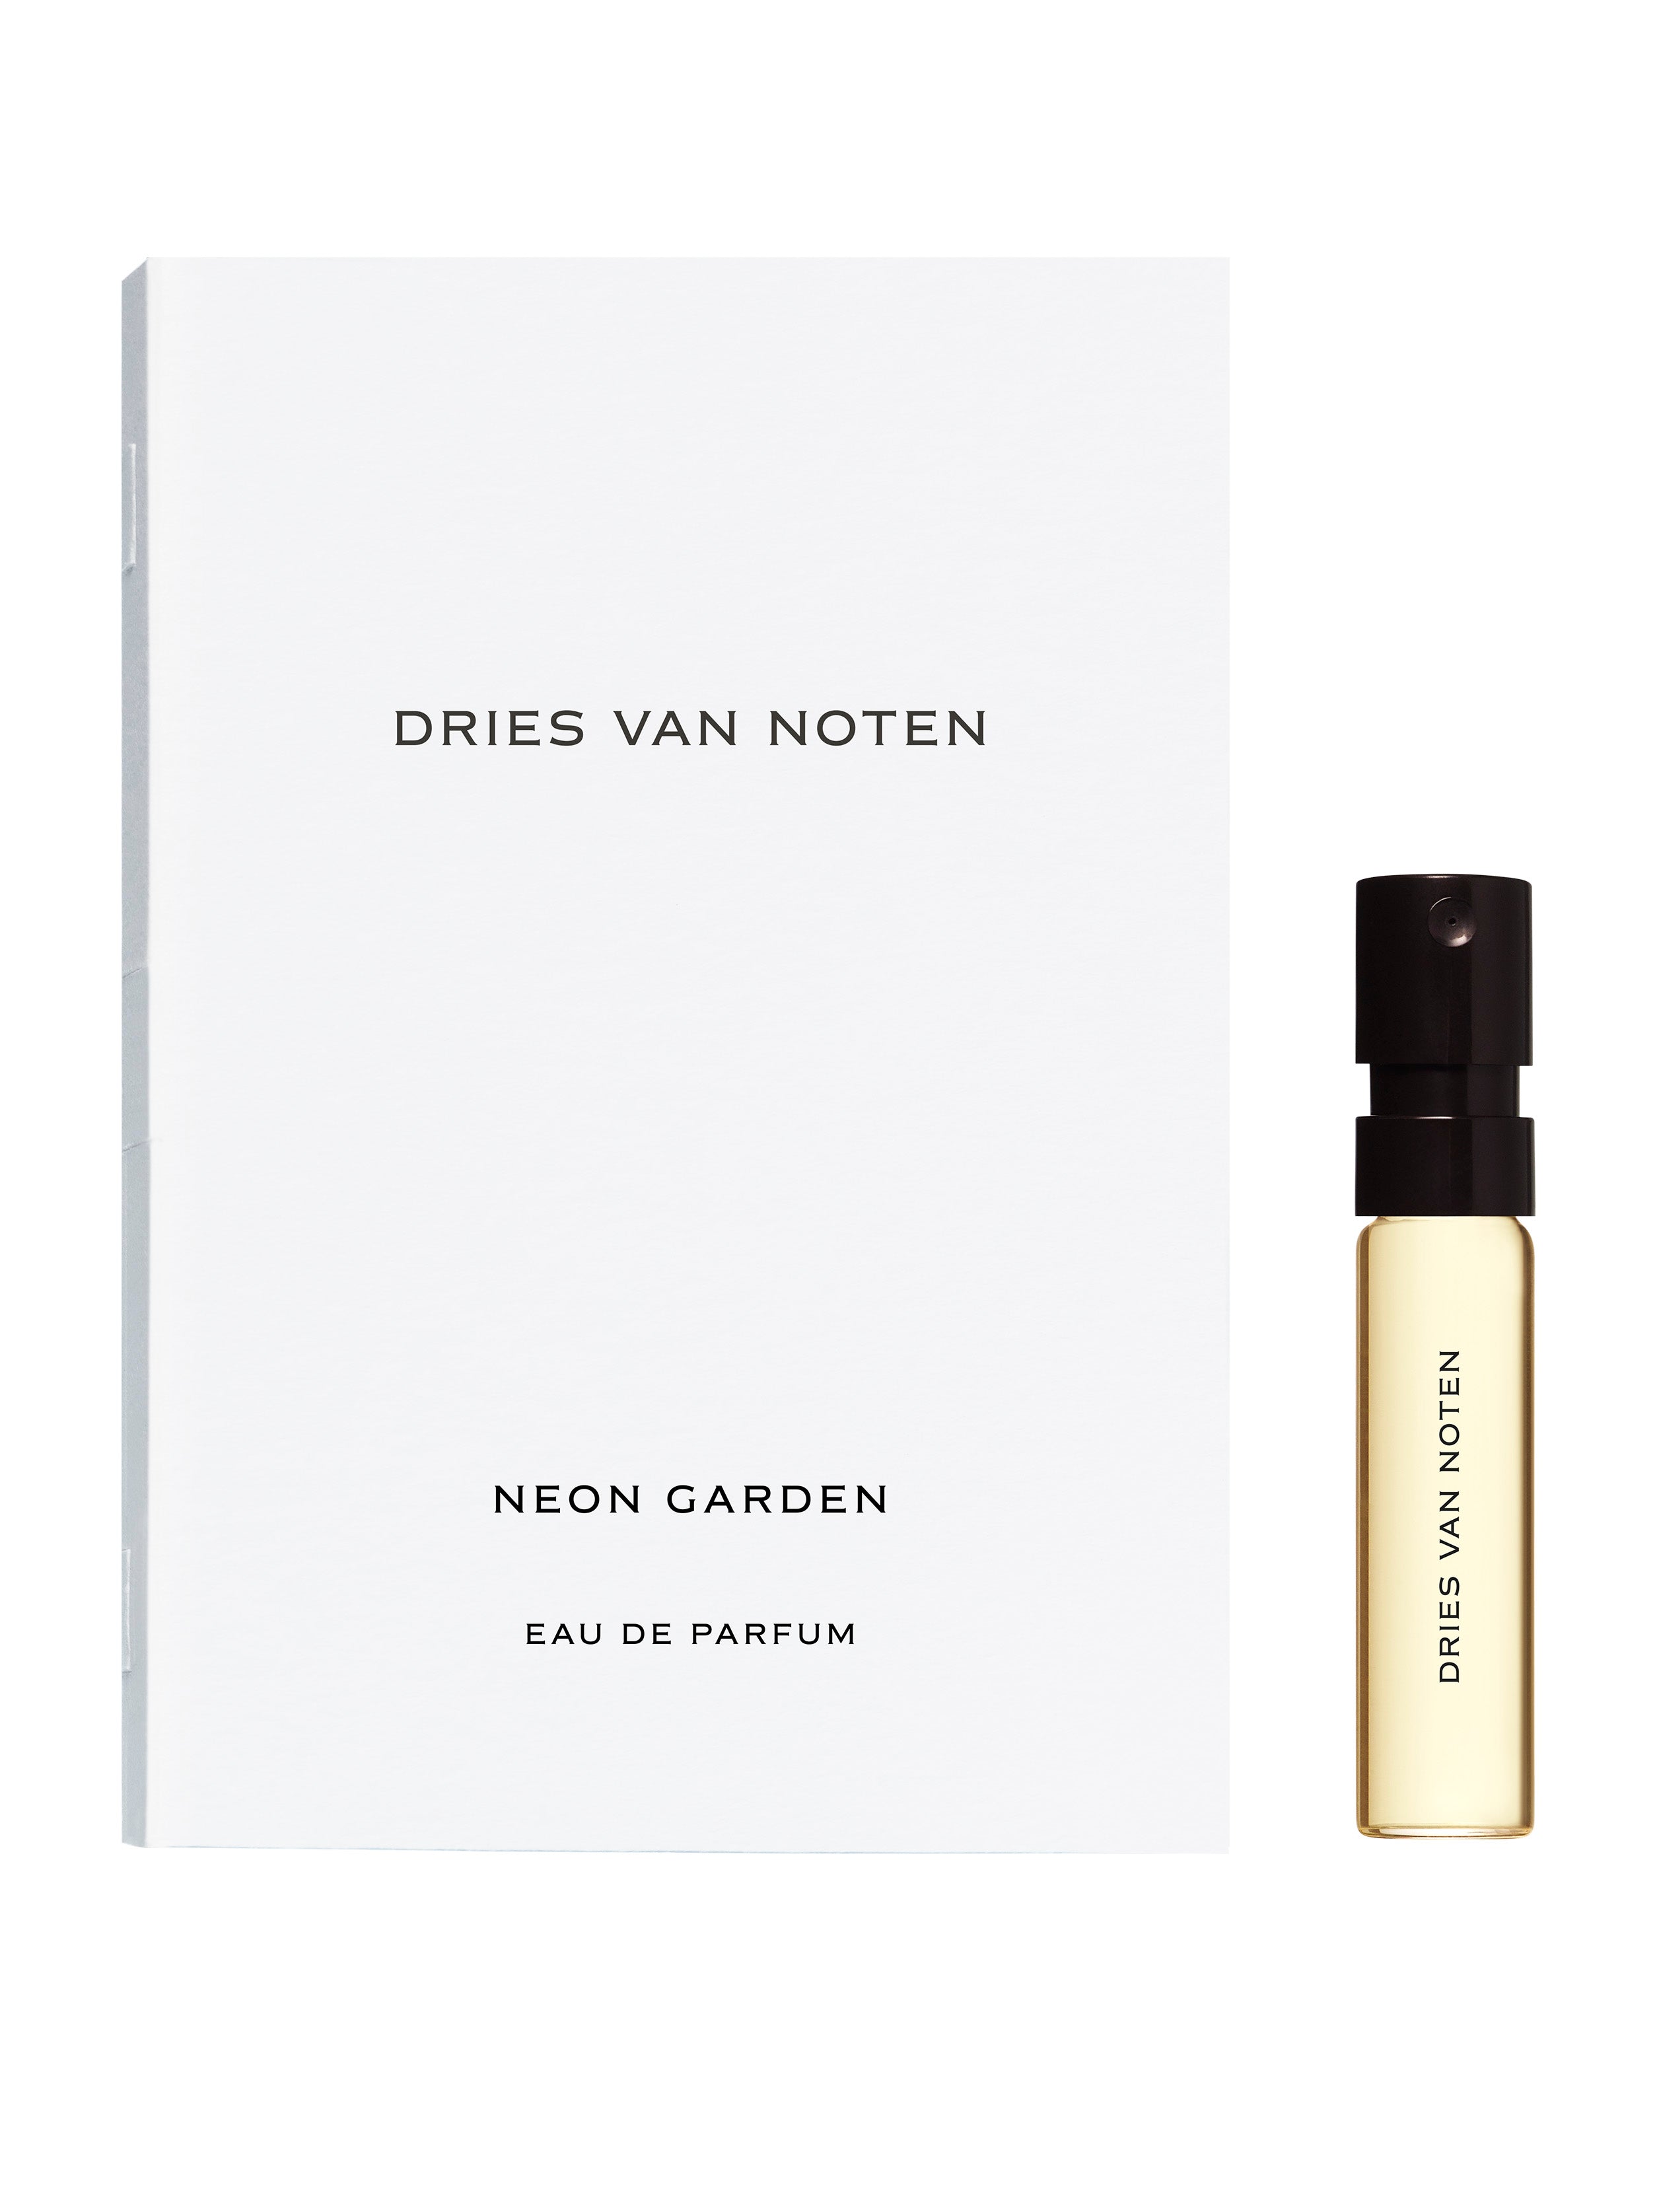 Neon Garden – Dries Van Noten